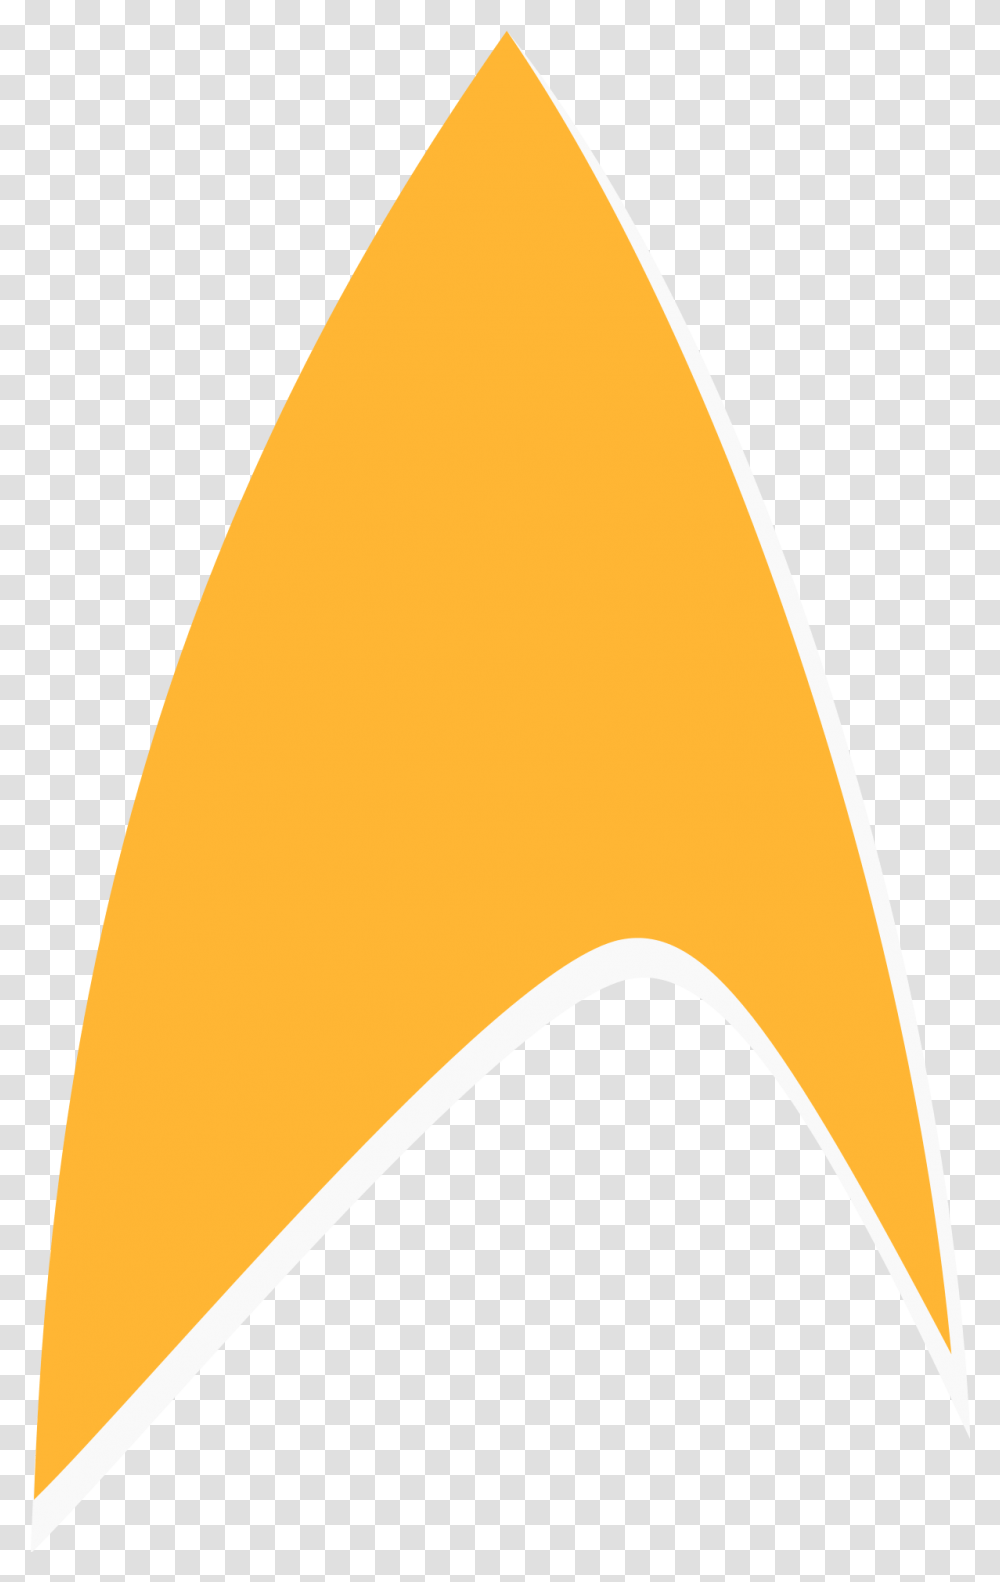 Delta Star Trek Delta Symbol, Label, Text, Pillow, Cushion Transparent Png